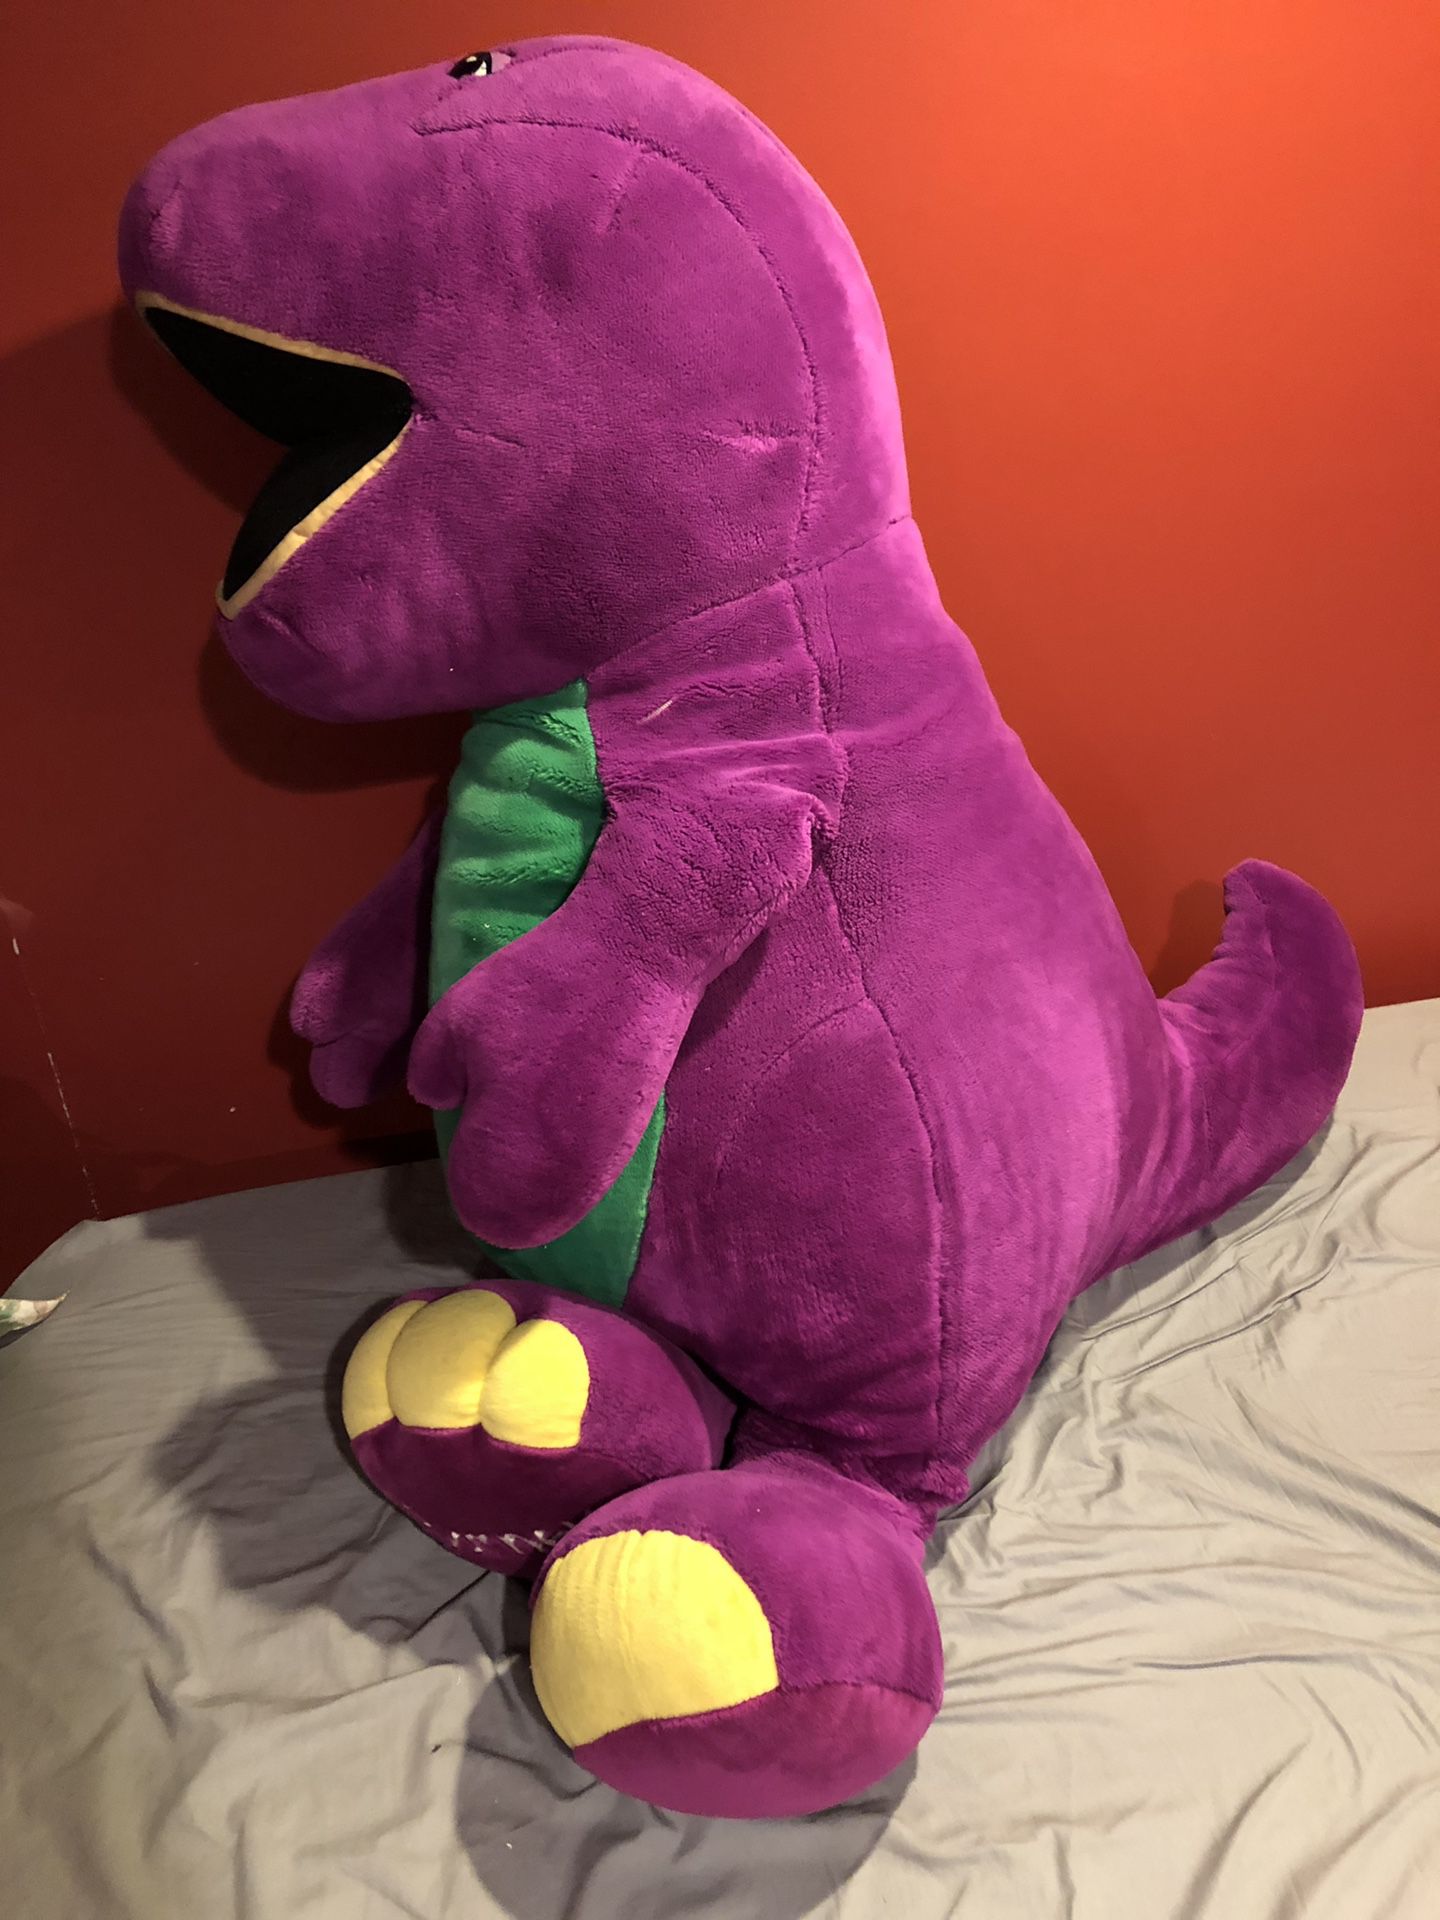 Life-size Barney stuffed animal